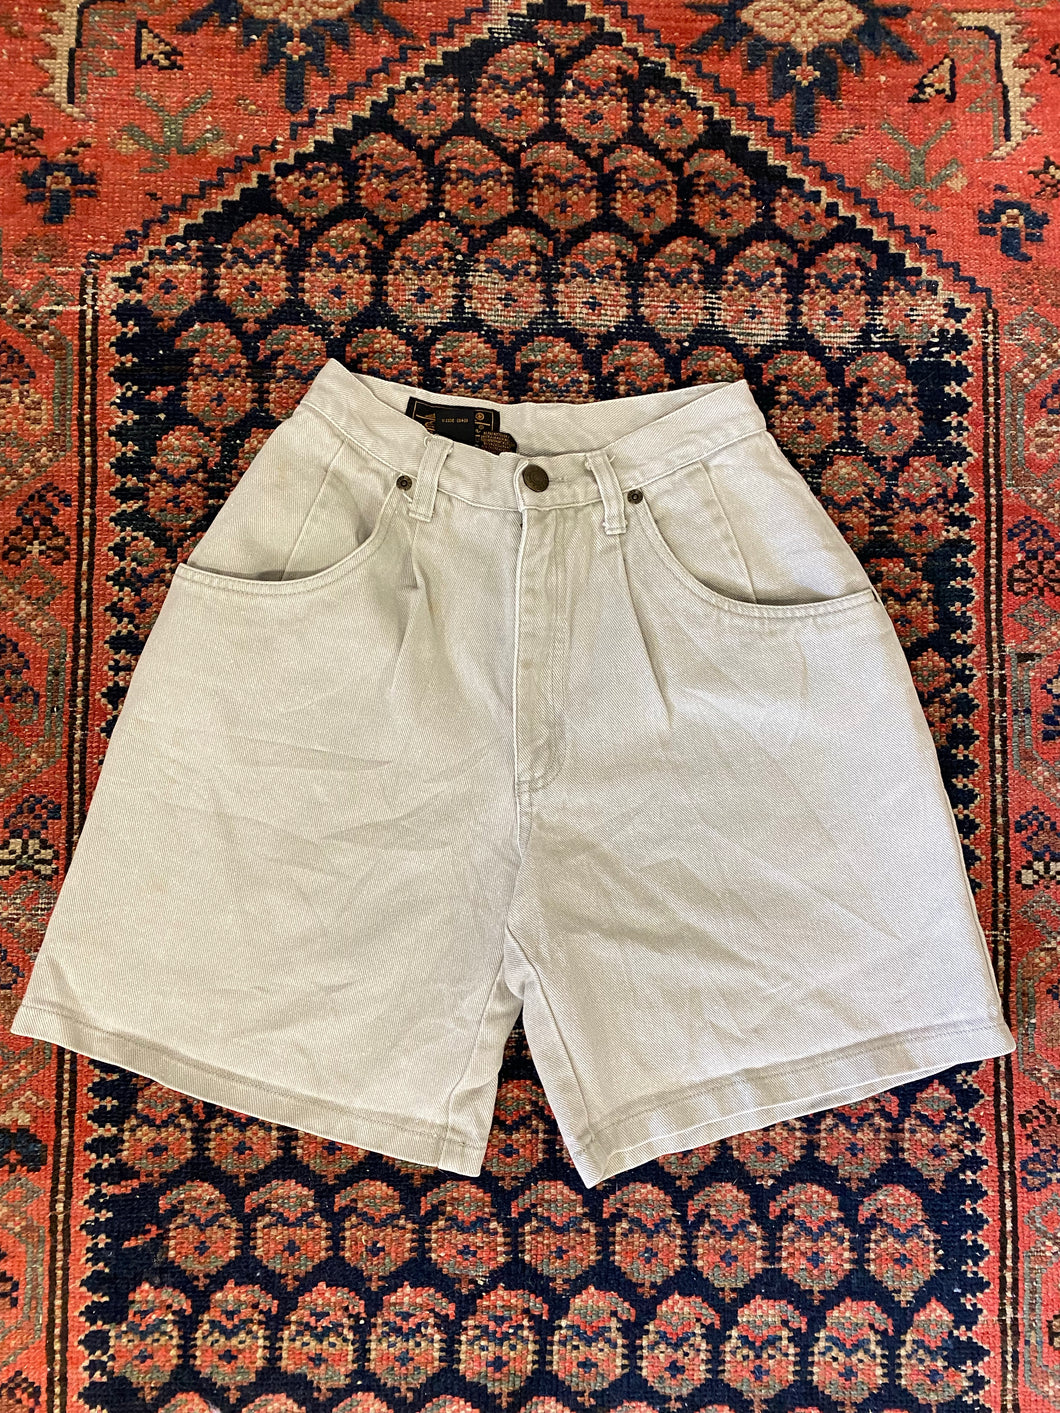 Vintage High Waisted Pleated Eddie Bauer Denim Shorts - 23in